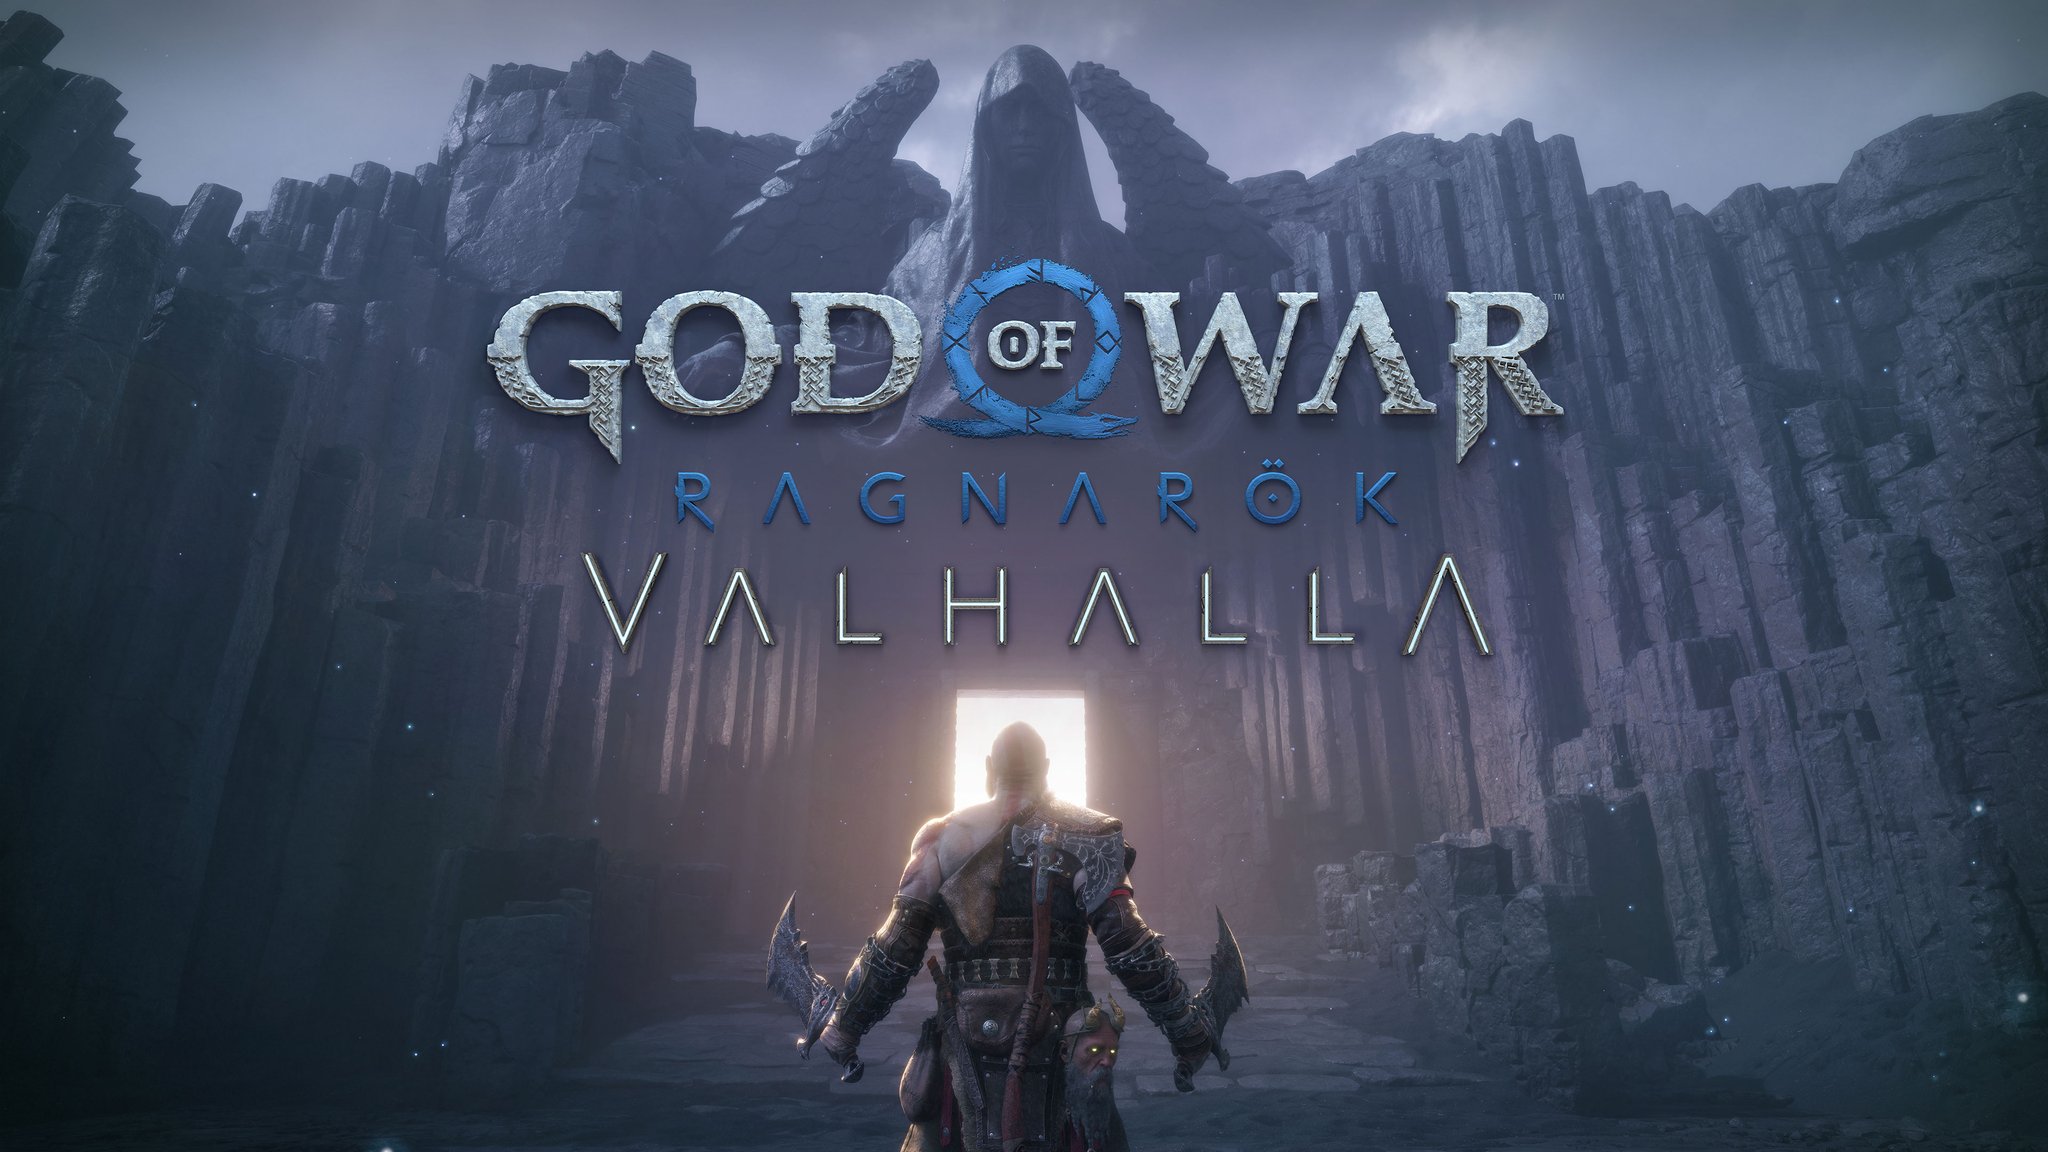 God of War Ragnarok: Valhalla ending explained - Dexerto